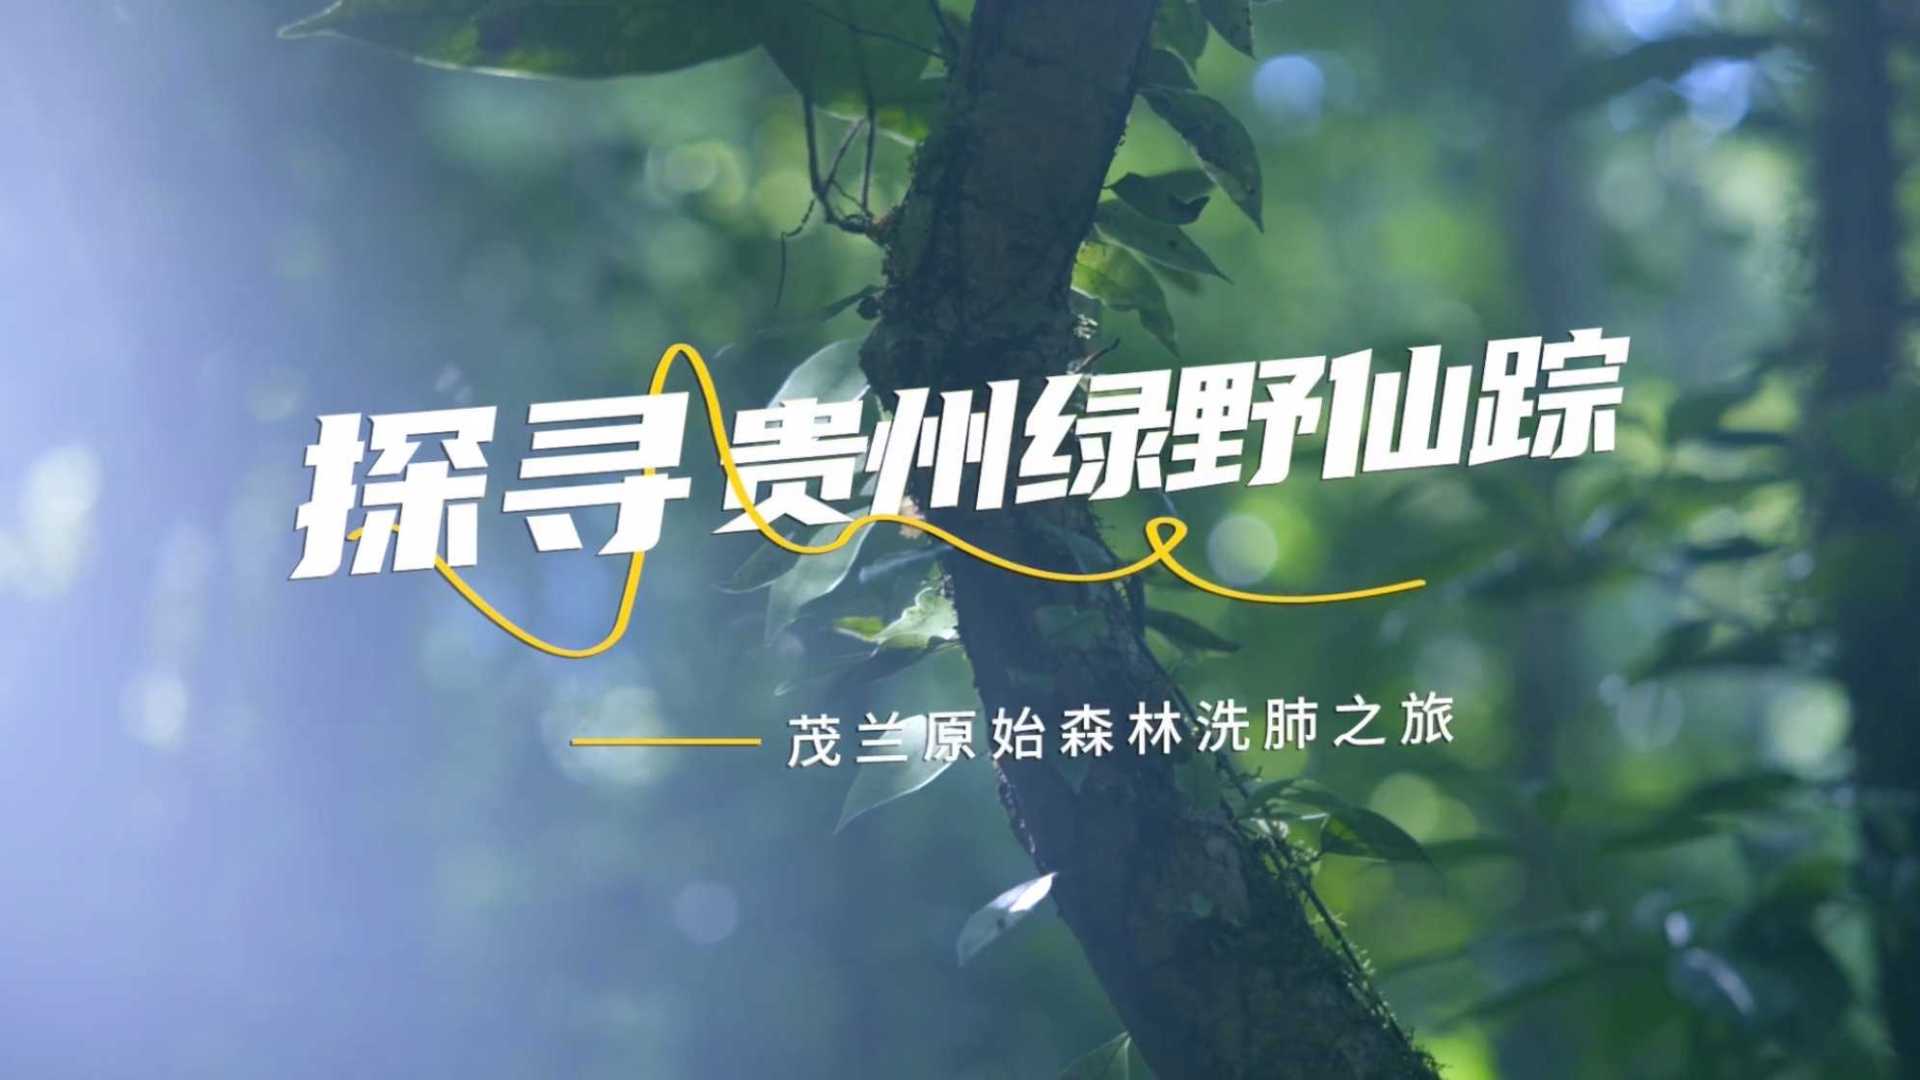 马蜂窝攻略短片《探寻贵州绿野仙踪》